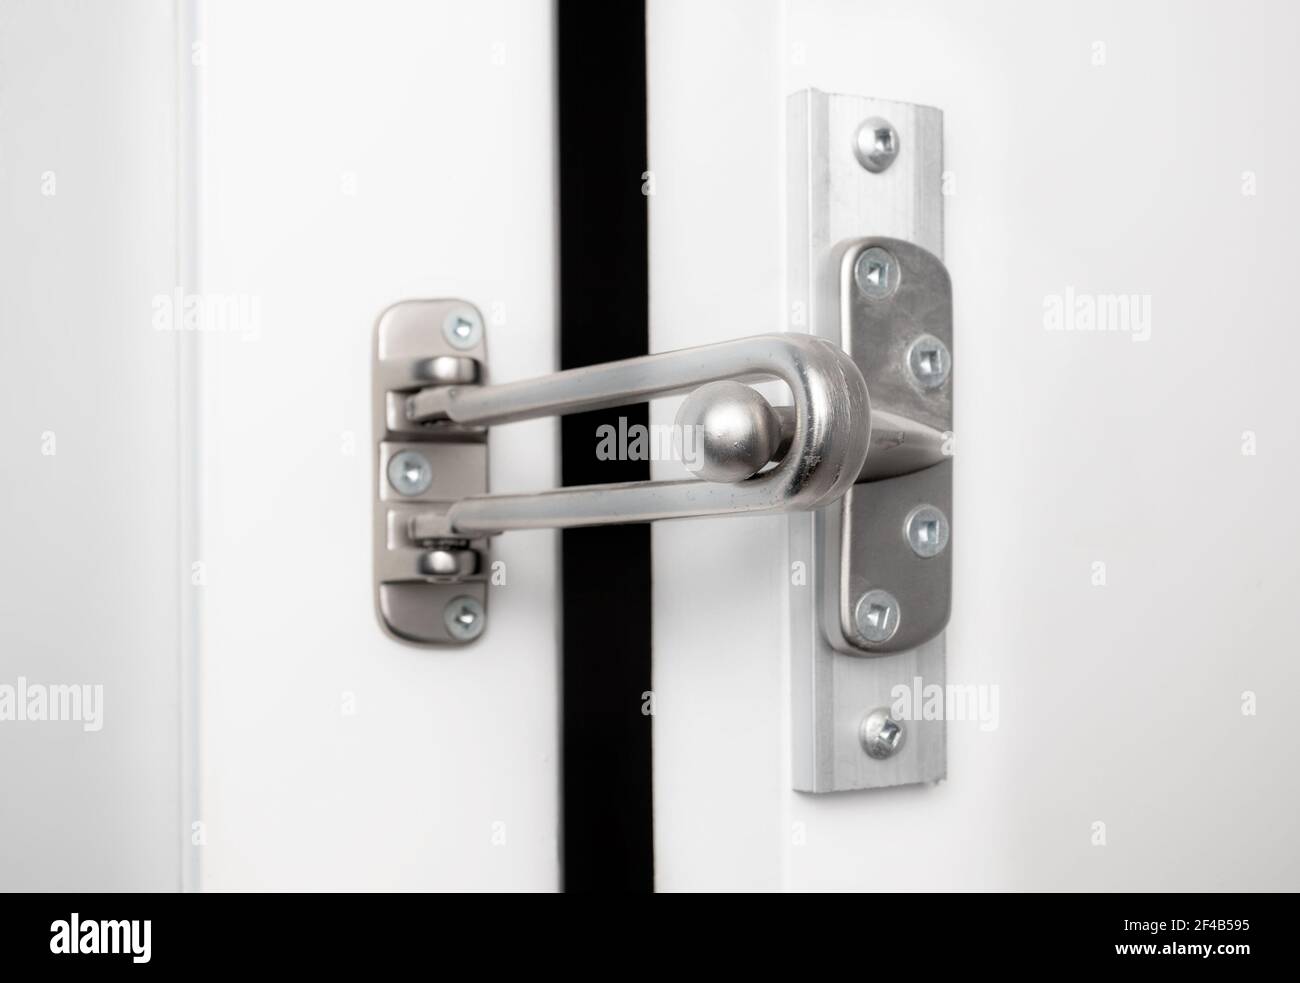 How to Open a Security Door Lock